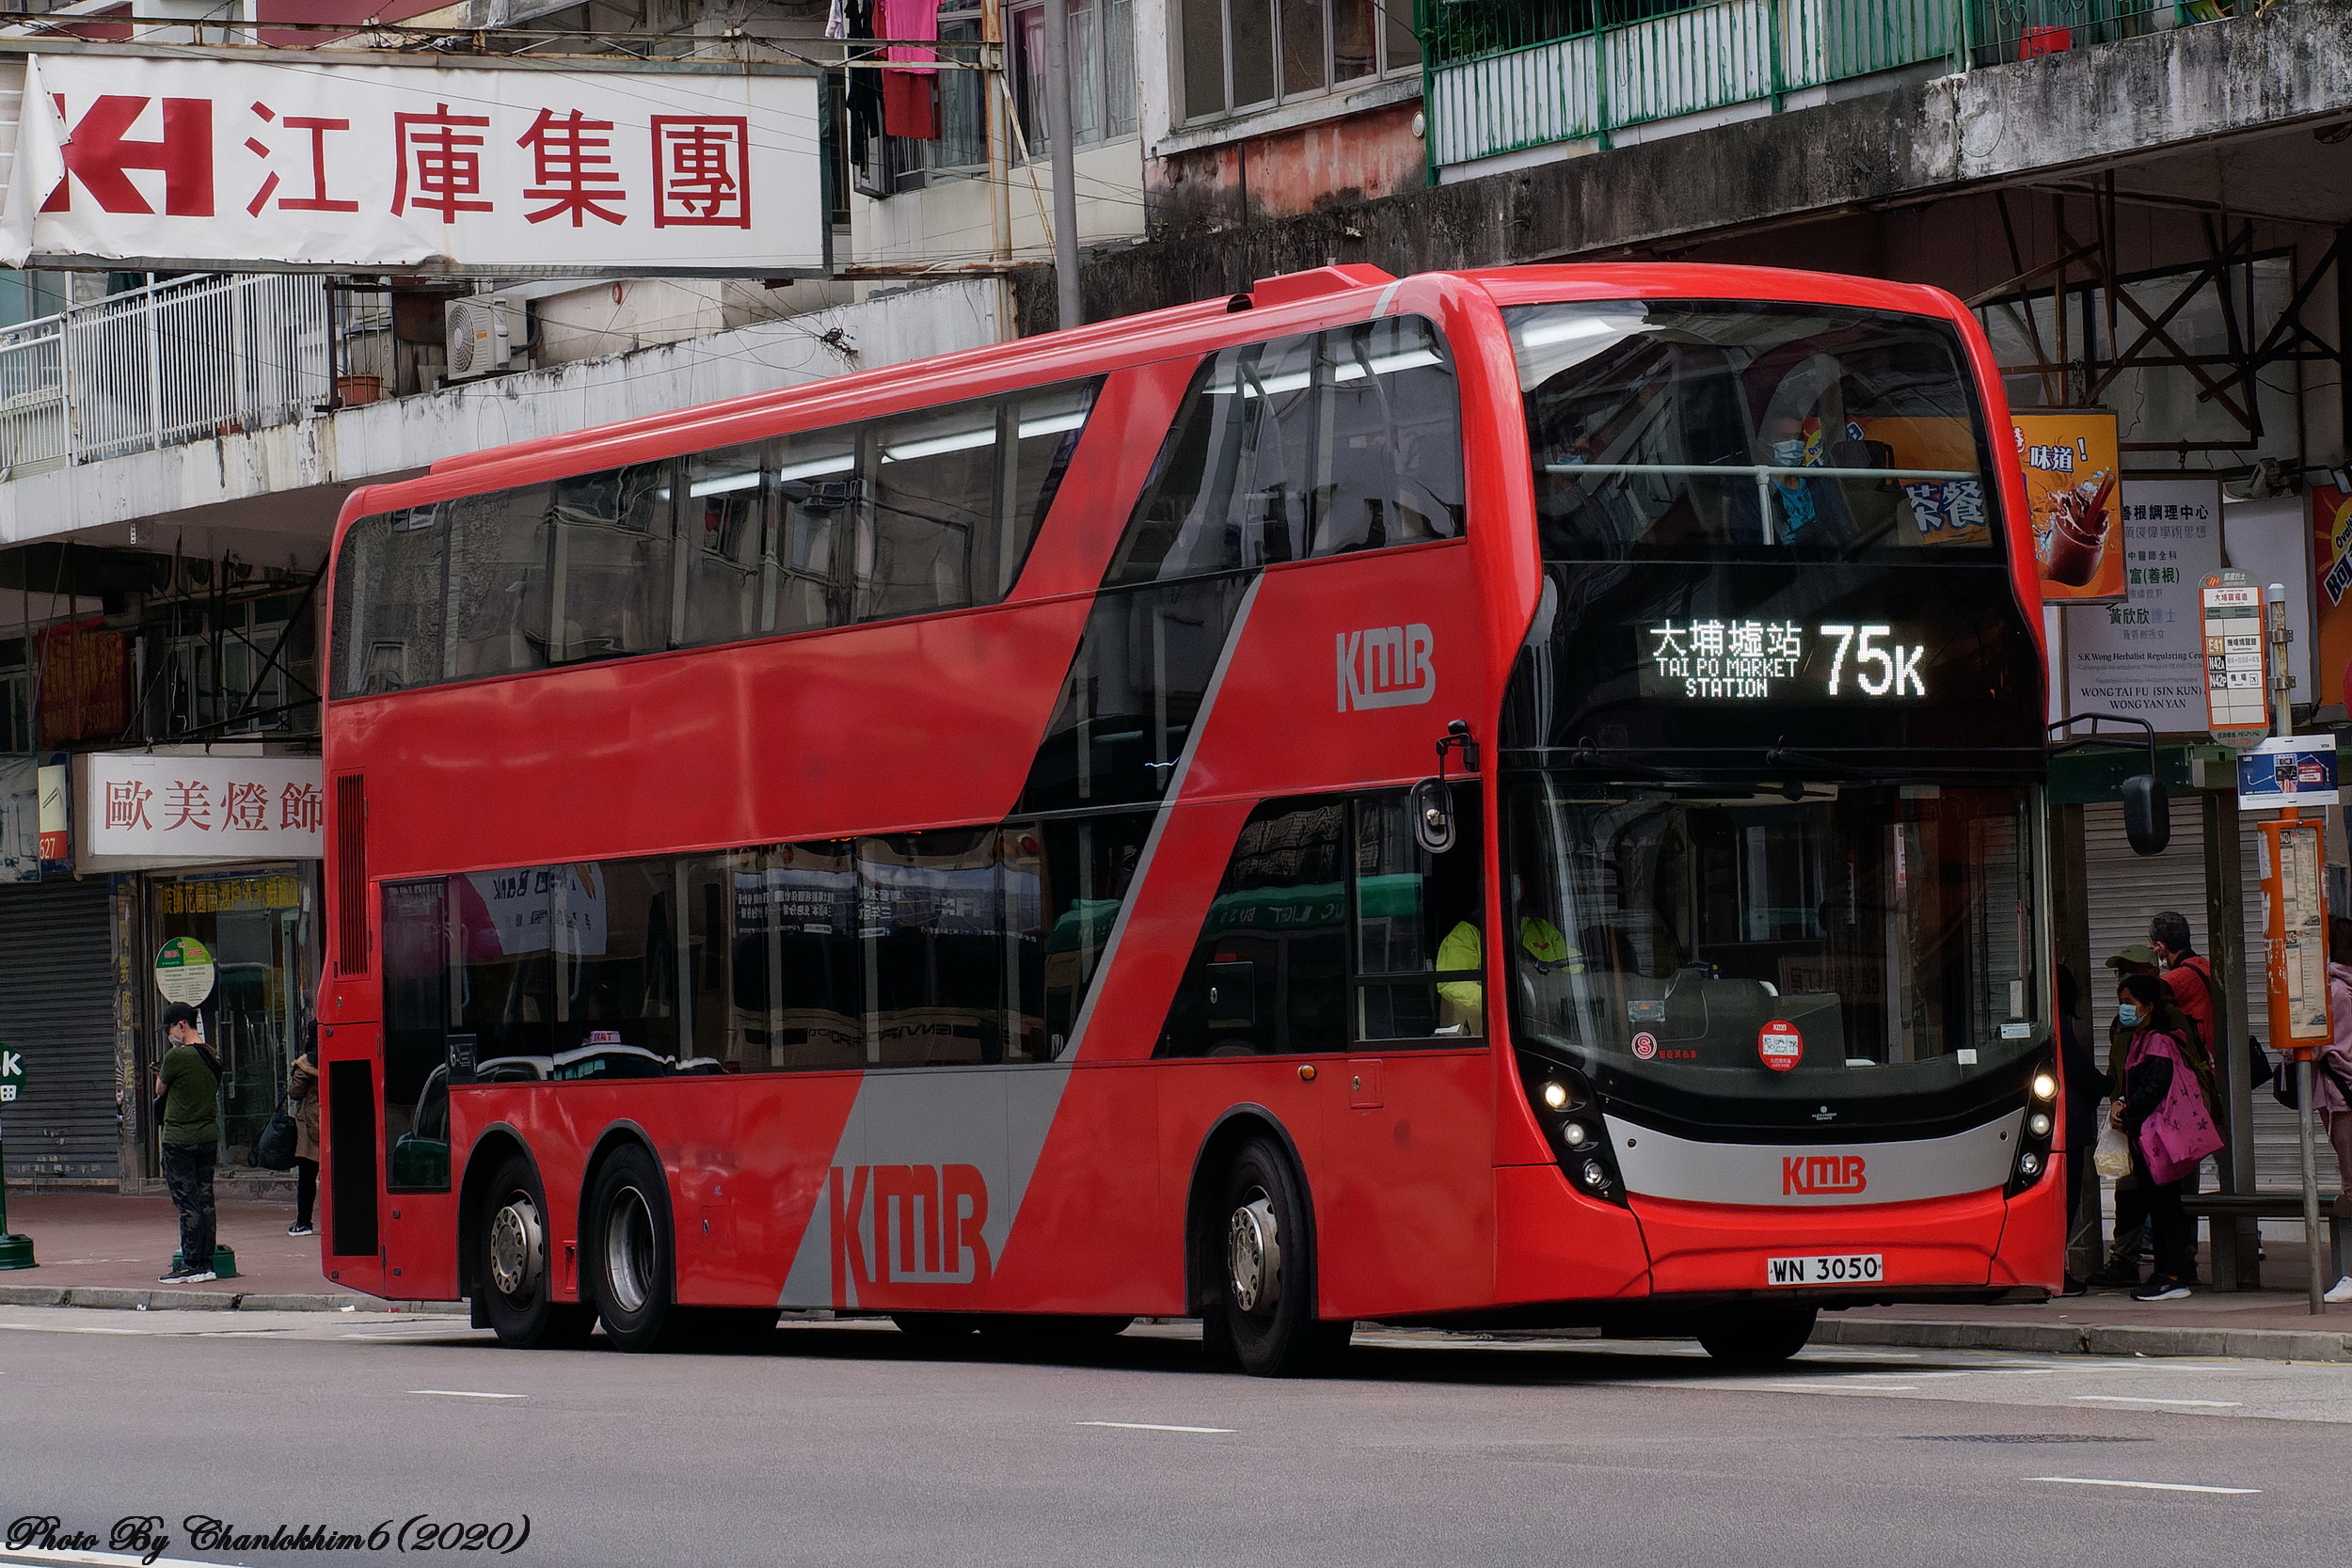 九巴75k線 香港巴士大典 Fandom